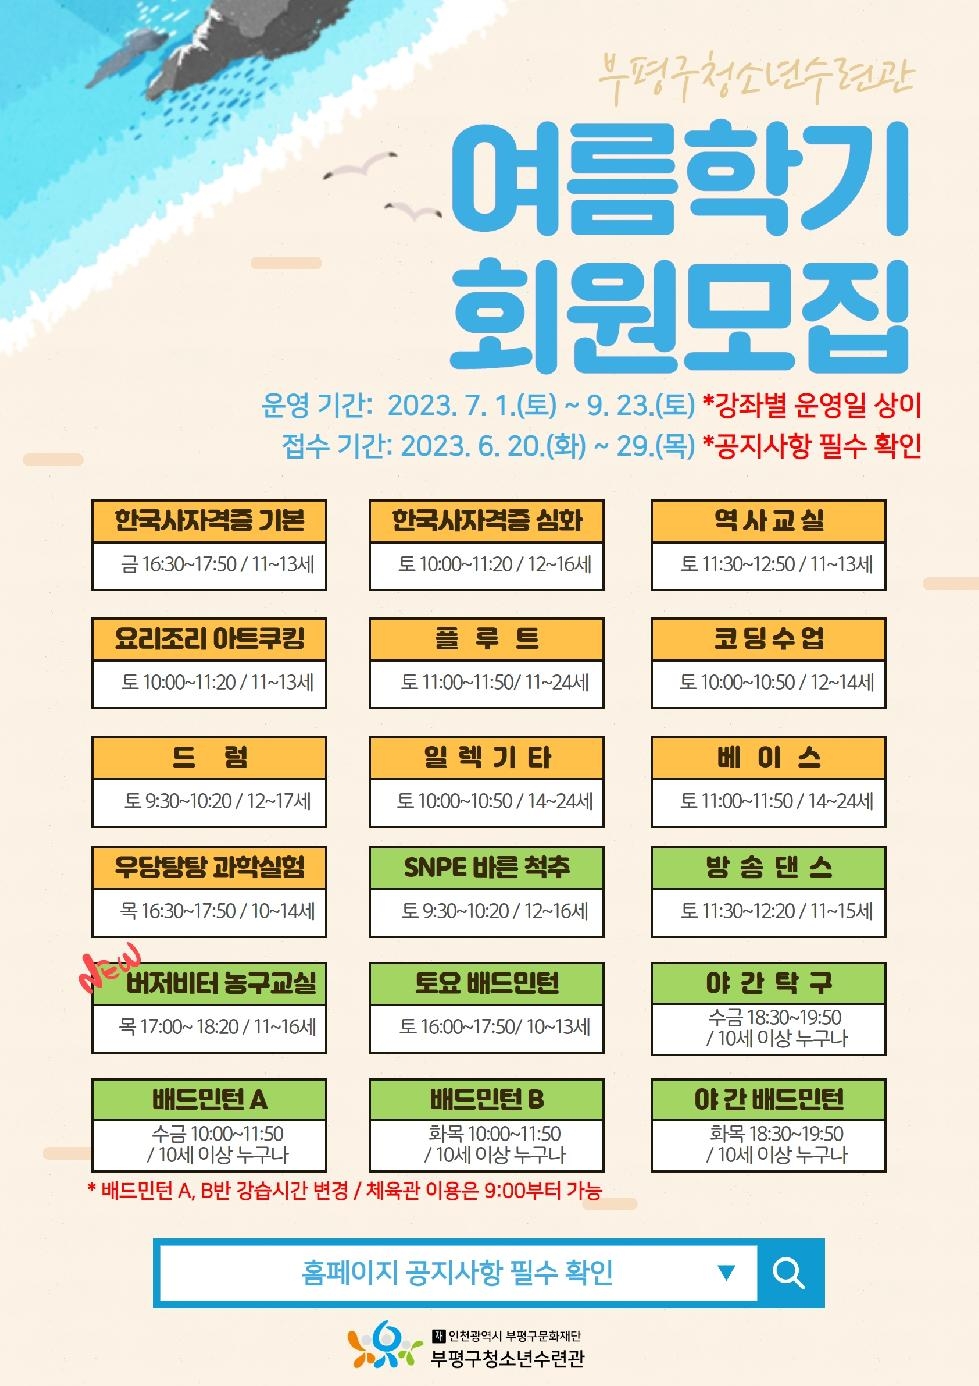 인천 부평구 청소년수련관, 2023 교육문화 여름학기 회원 모집